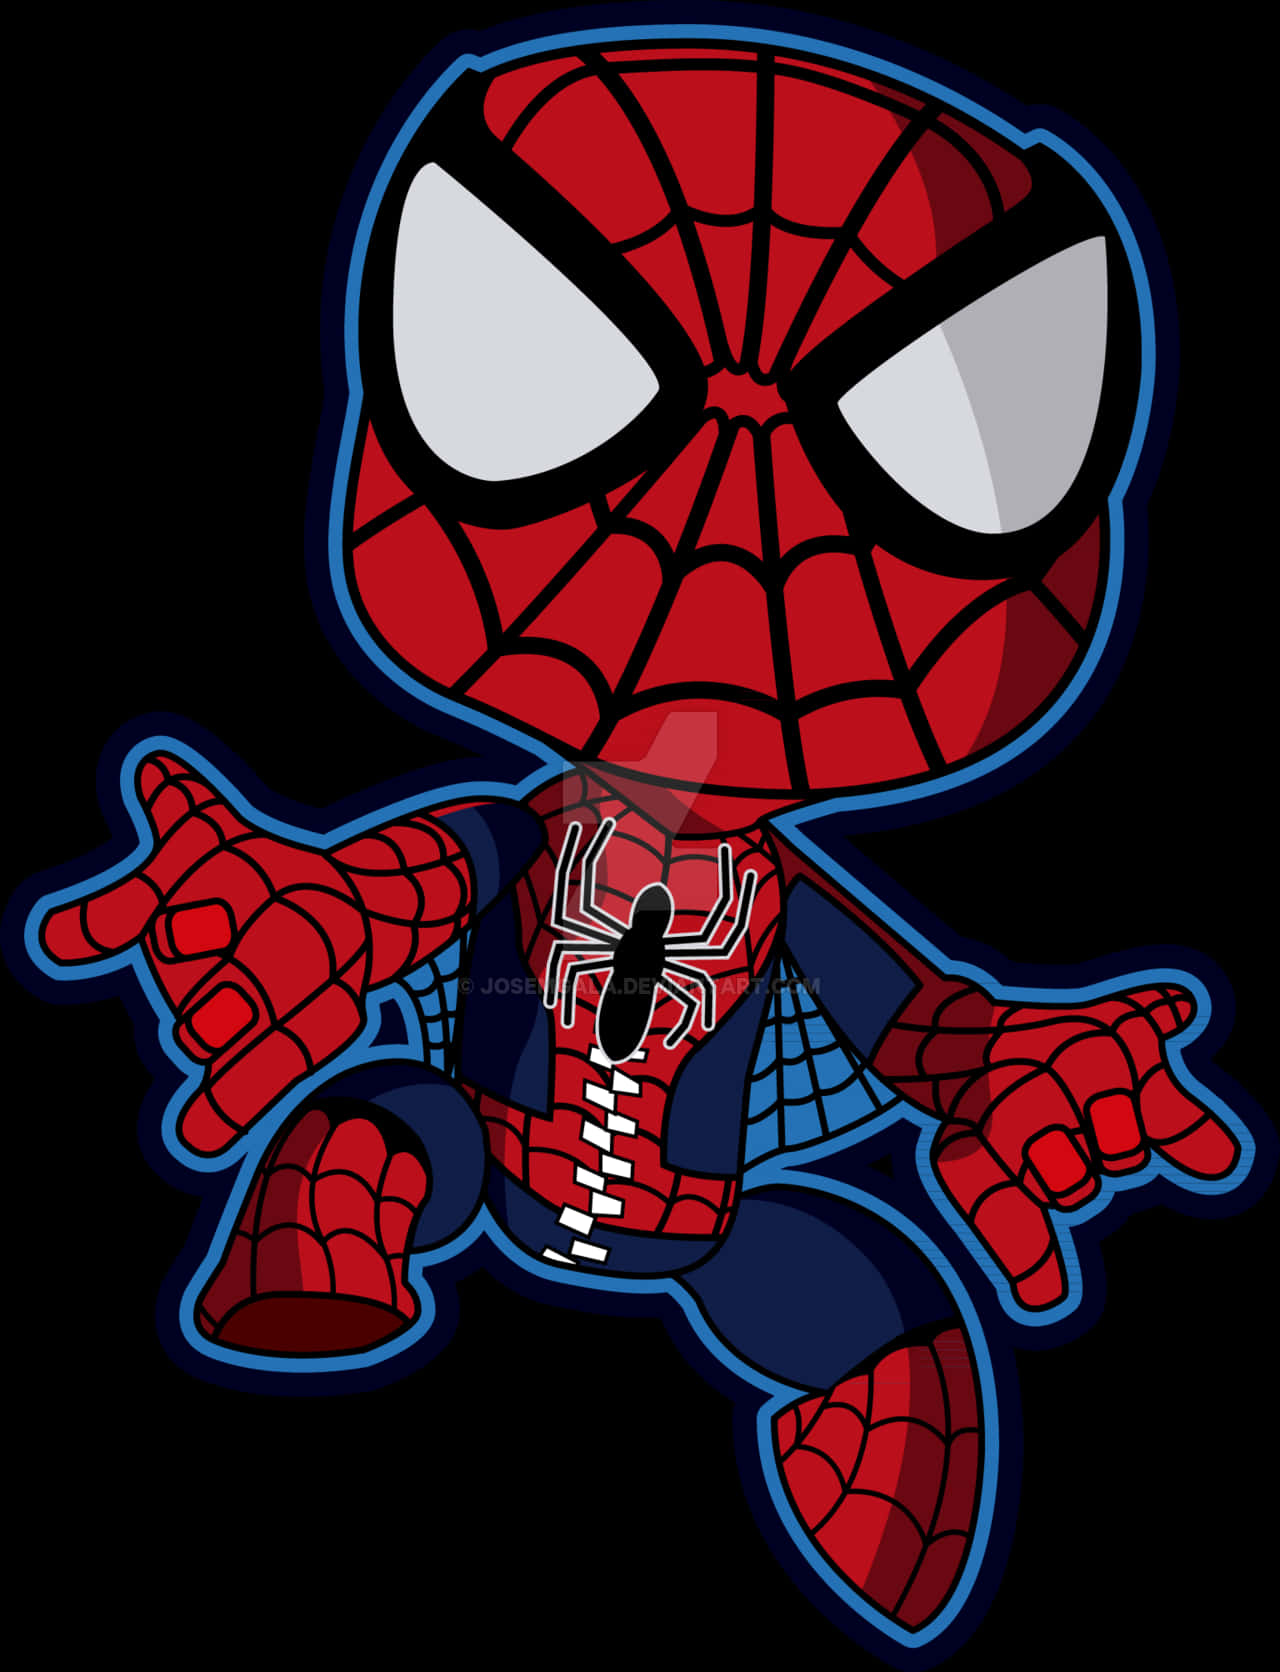 Chibi Spider Man Pose PNG